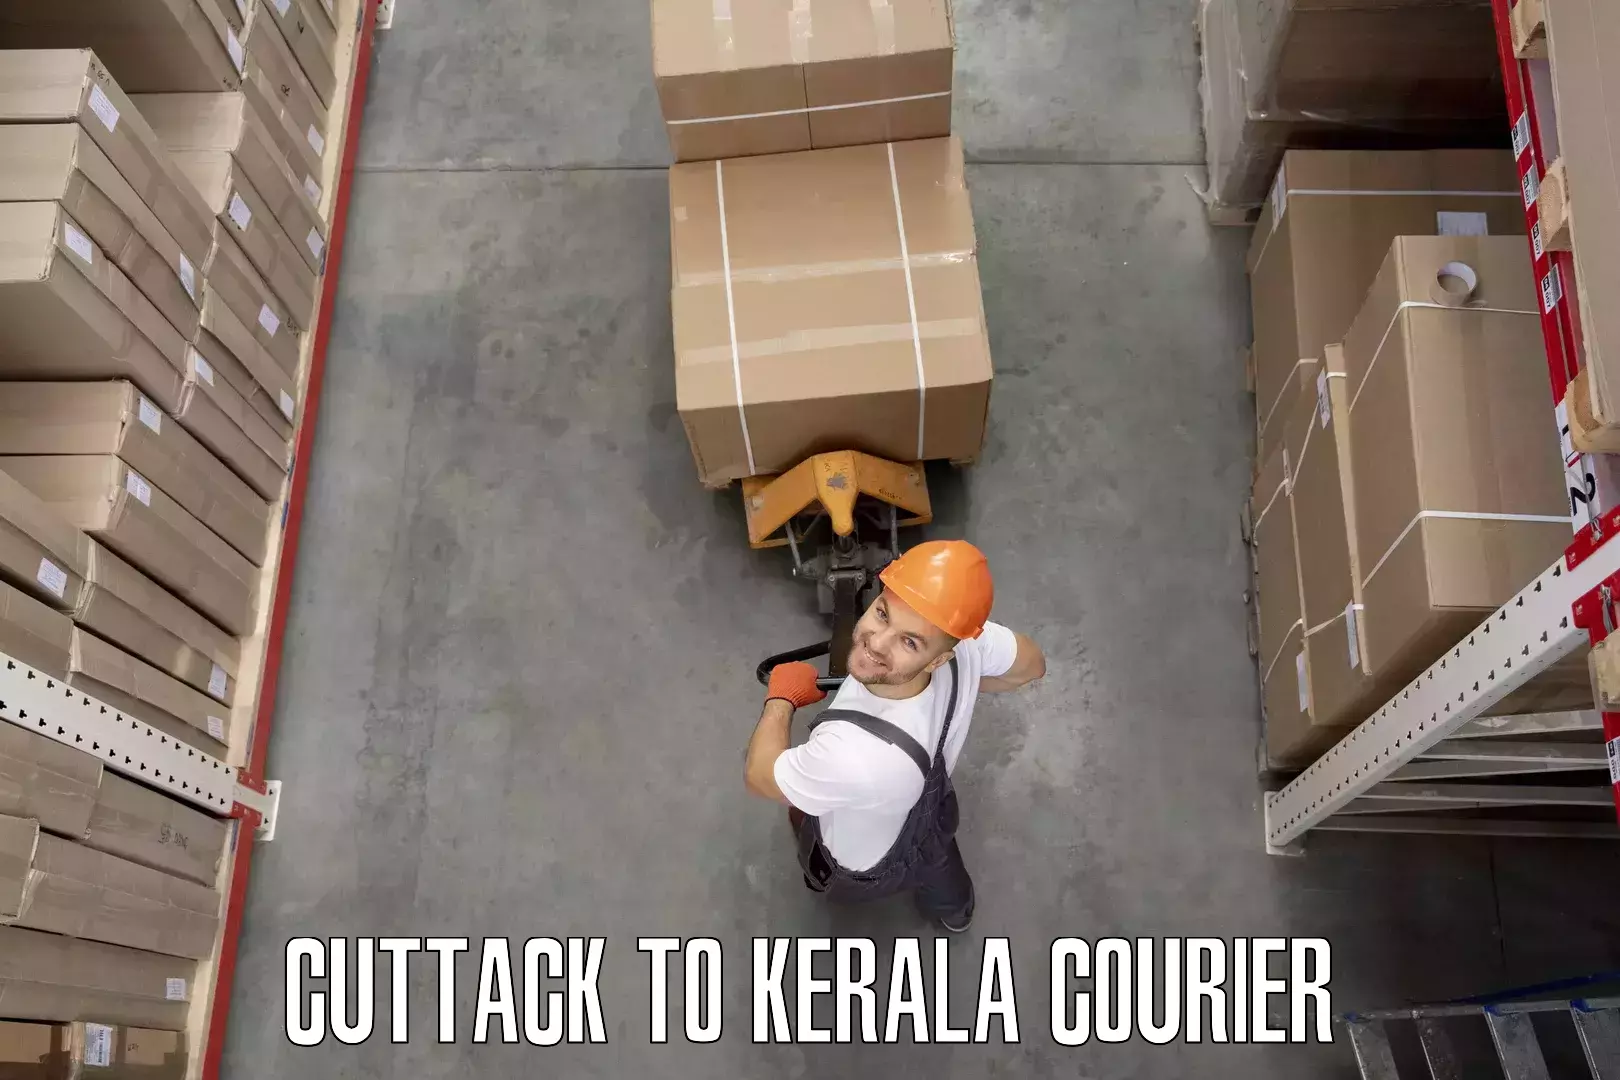 Furniture transport company Cuttack to Calicut